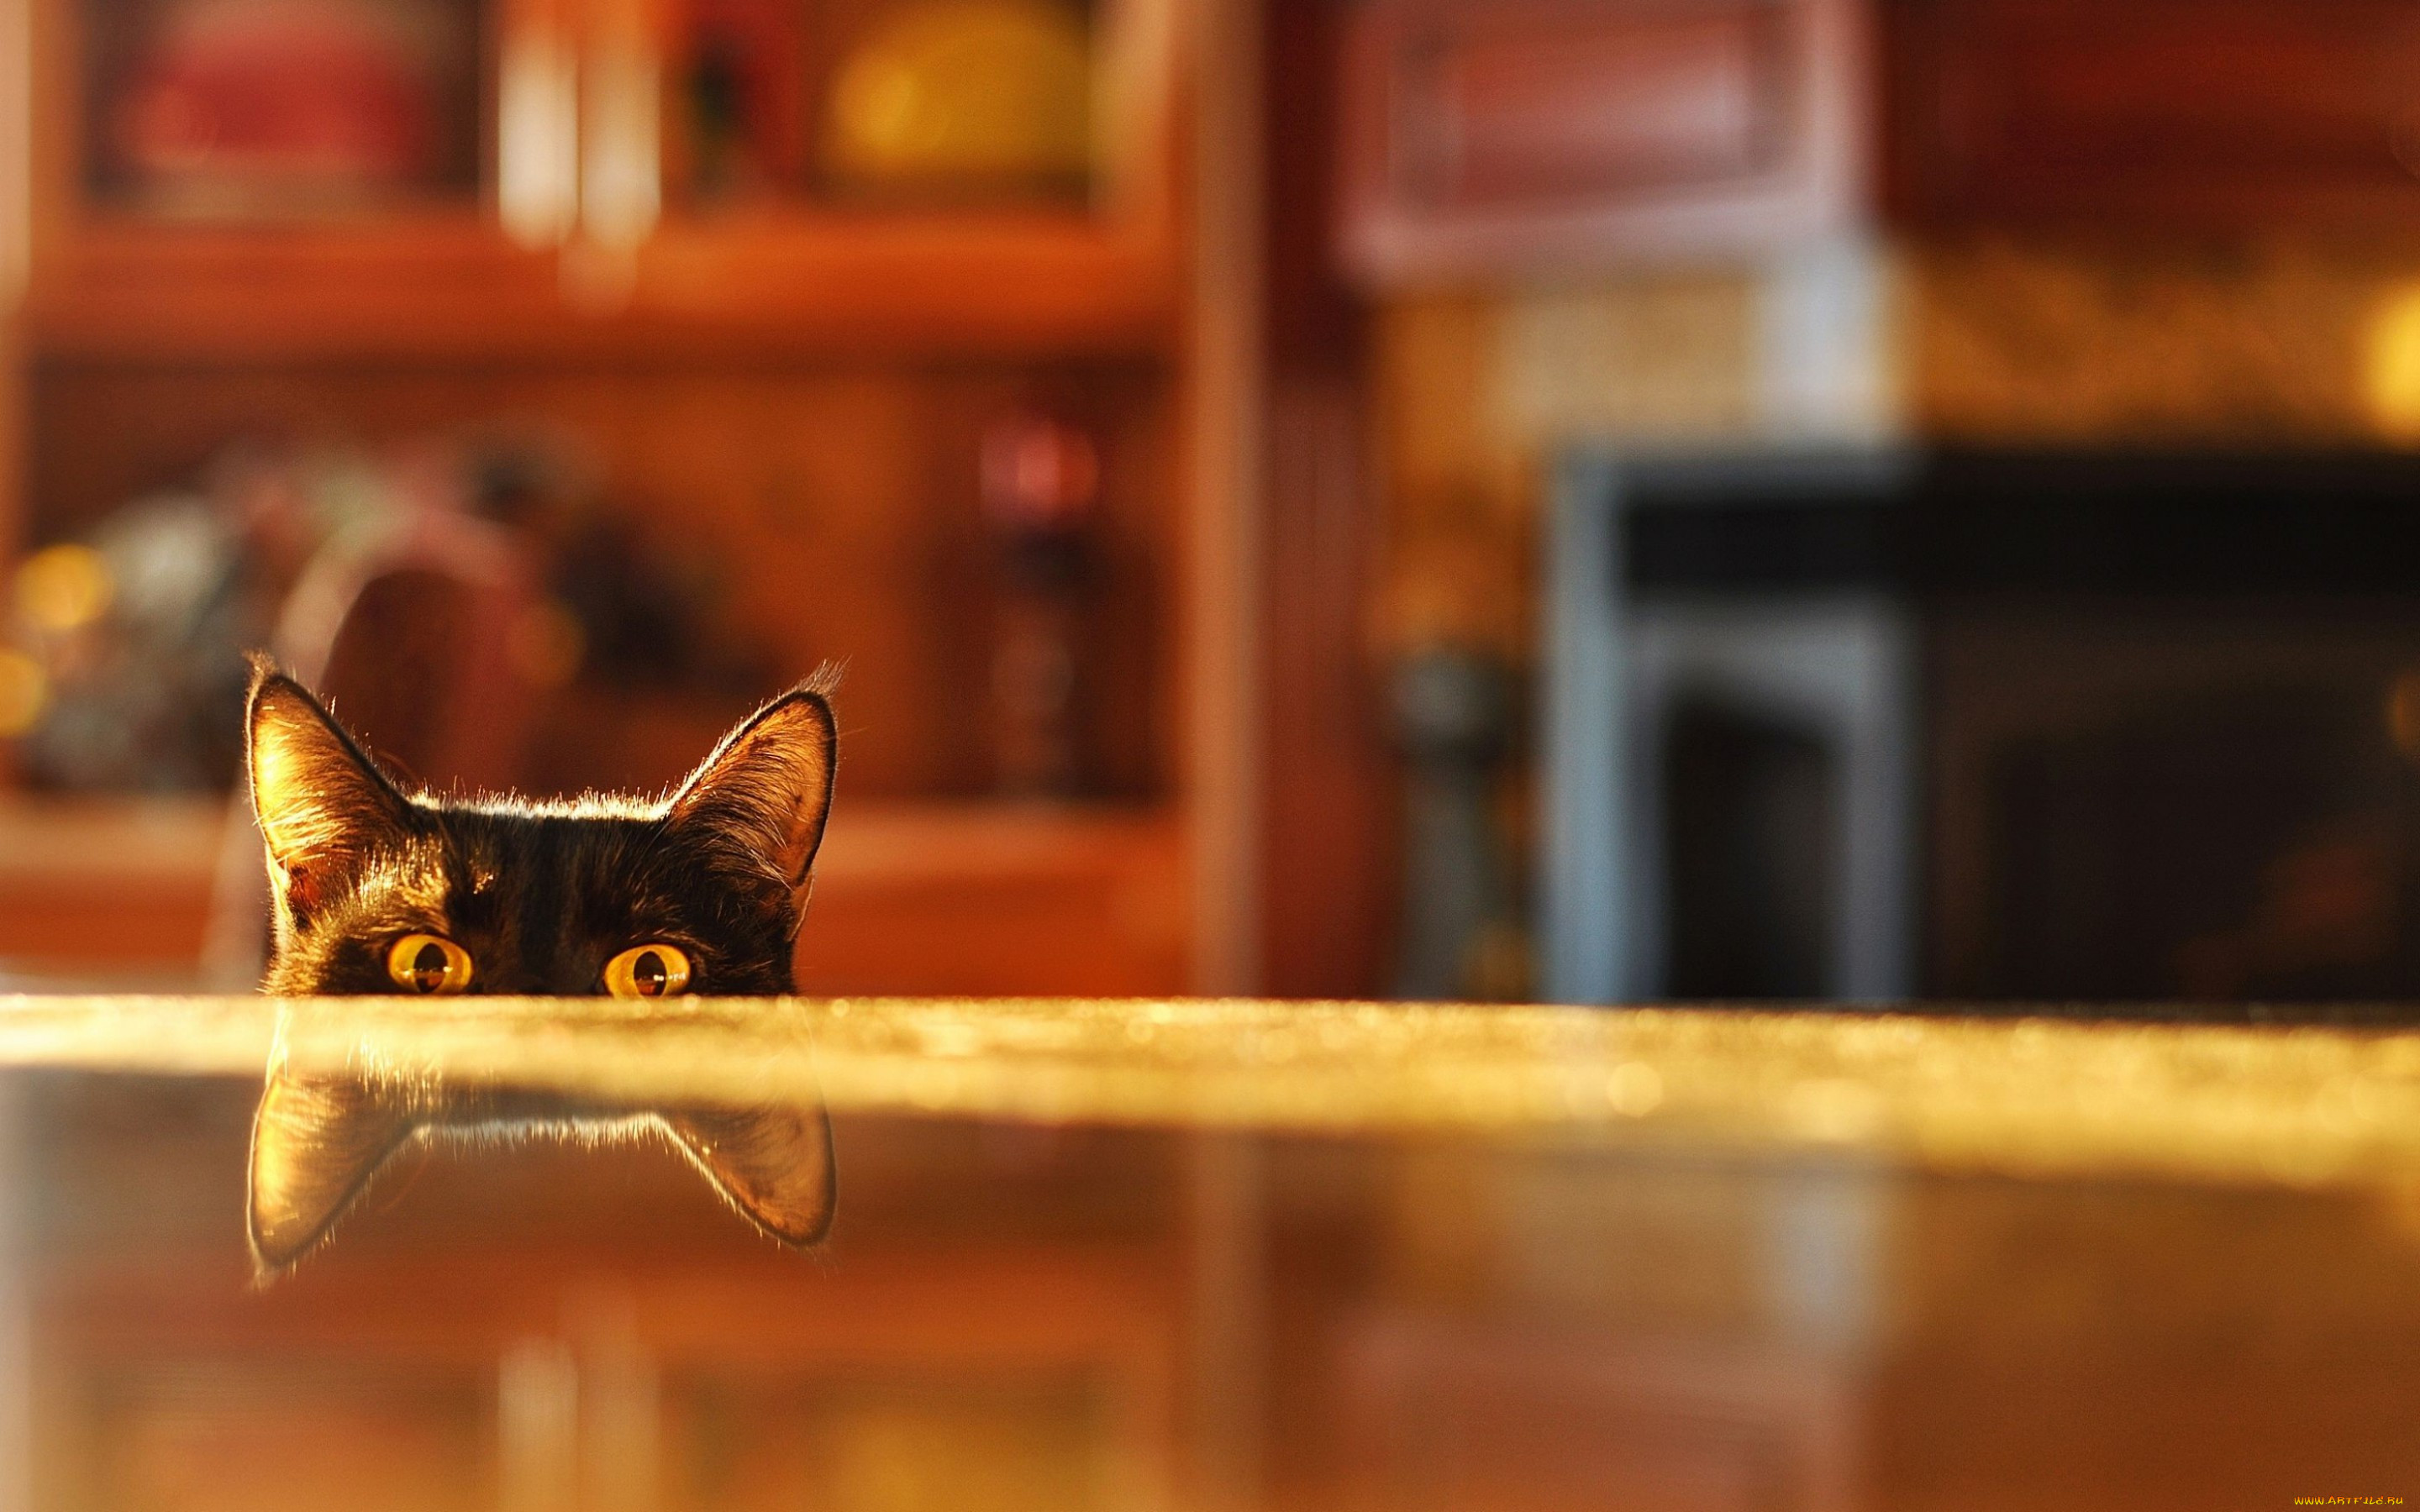 Позволяет видеть из за угла сканворд 8. Кот выглядывает. Котик выглядывает из под стола. Кот выглядывает из-за стола.